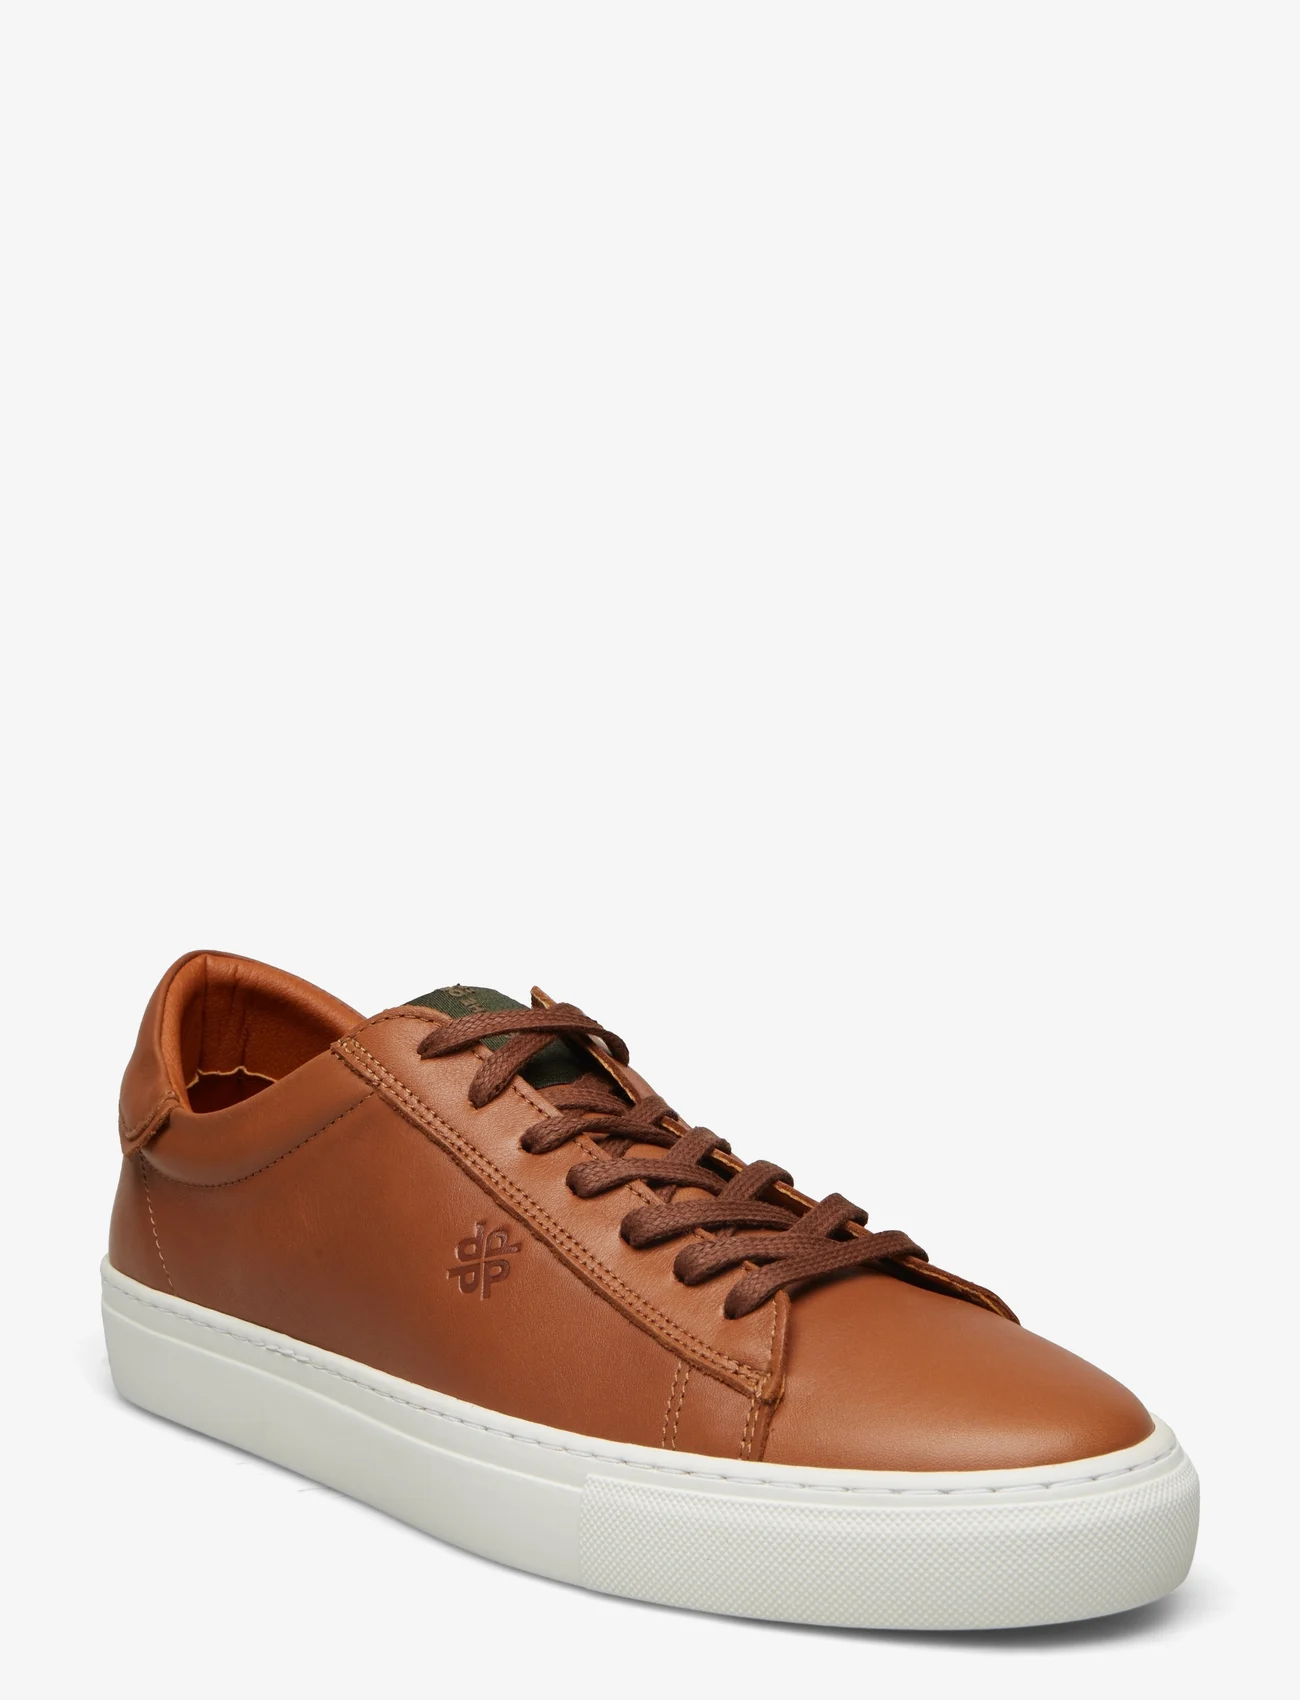 Playboy Footwear - Henri - low tops - brown leather - 0